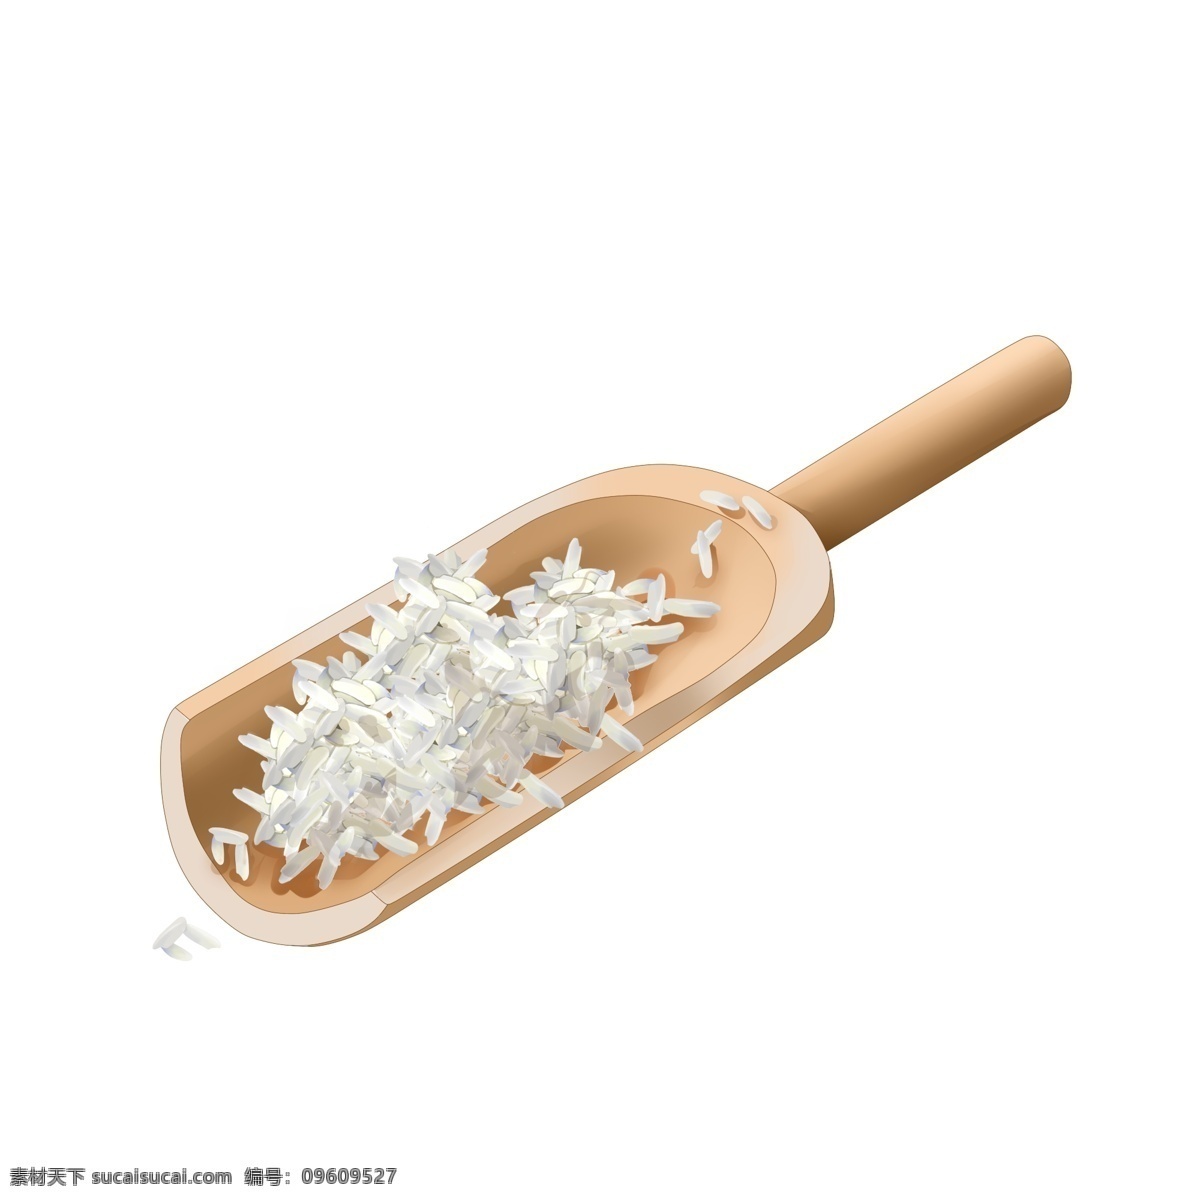 创意 大米 丰收 插画 木铲 木质铲子 丰收配图 收米场景 米粒 大米饭 绿色食品 粗粮 美味大米饭